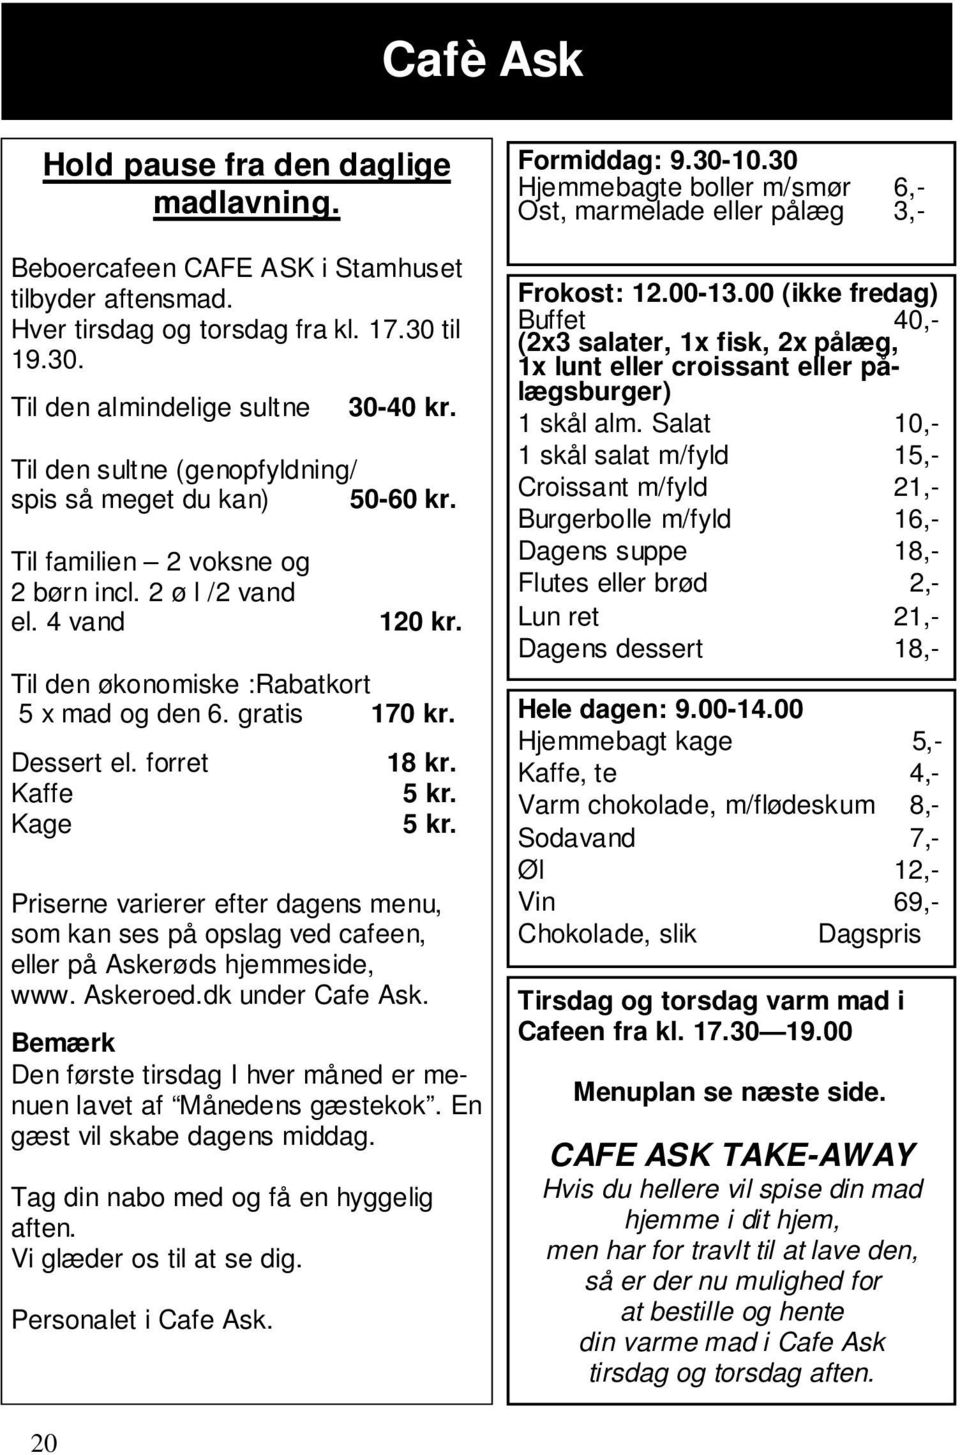 Dessert el. forret Kaffe Kage 18 kr. 5 kr. 5 kr. Priserne varierer efter dagens menu, som kan ses på opslag ved cafeen, eller på Askerøds hjemmeside, www. Askeroed.dk under Cafe Ask.